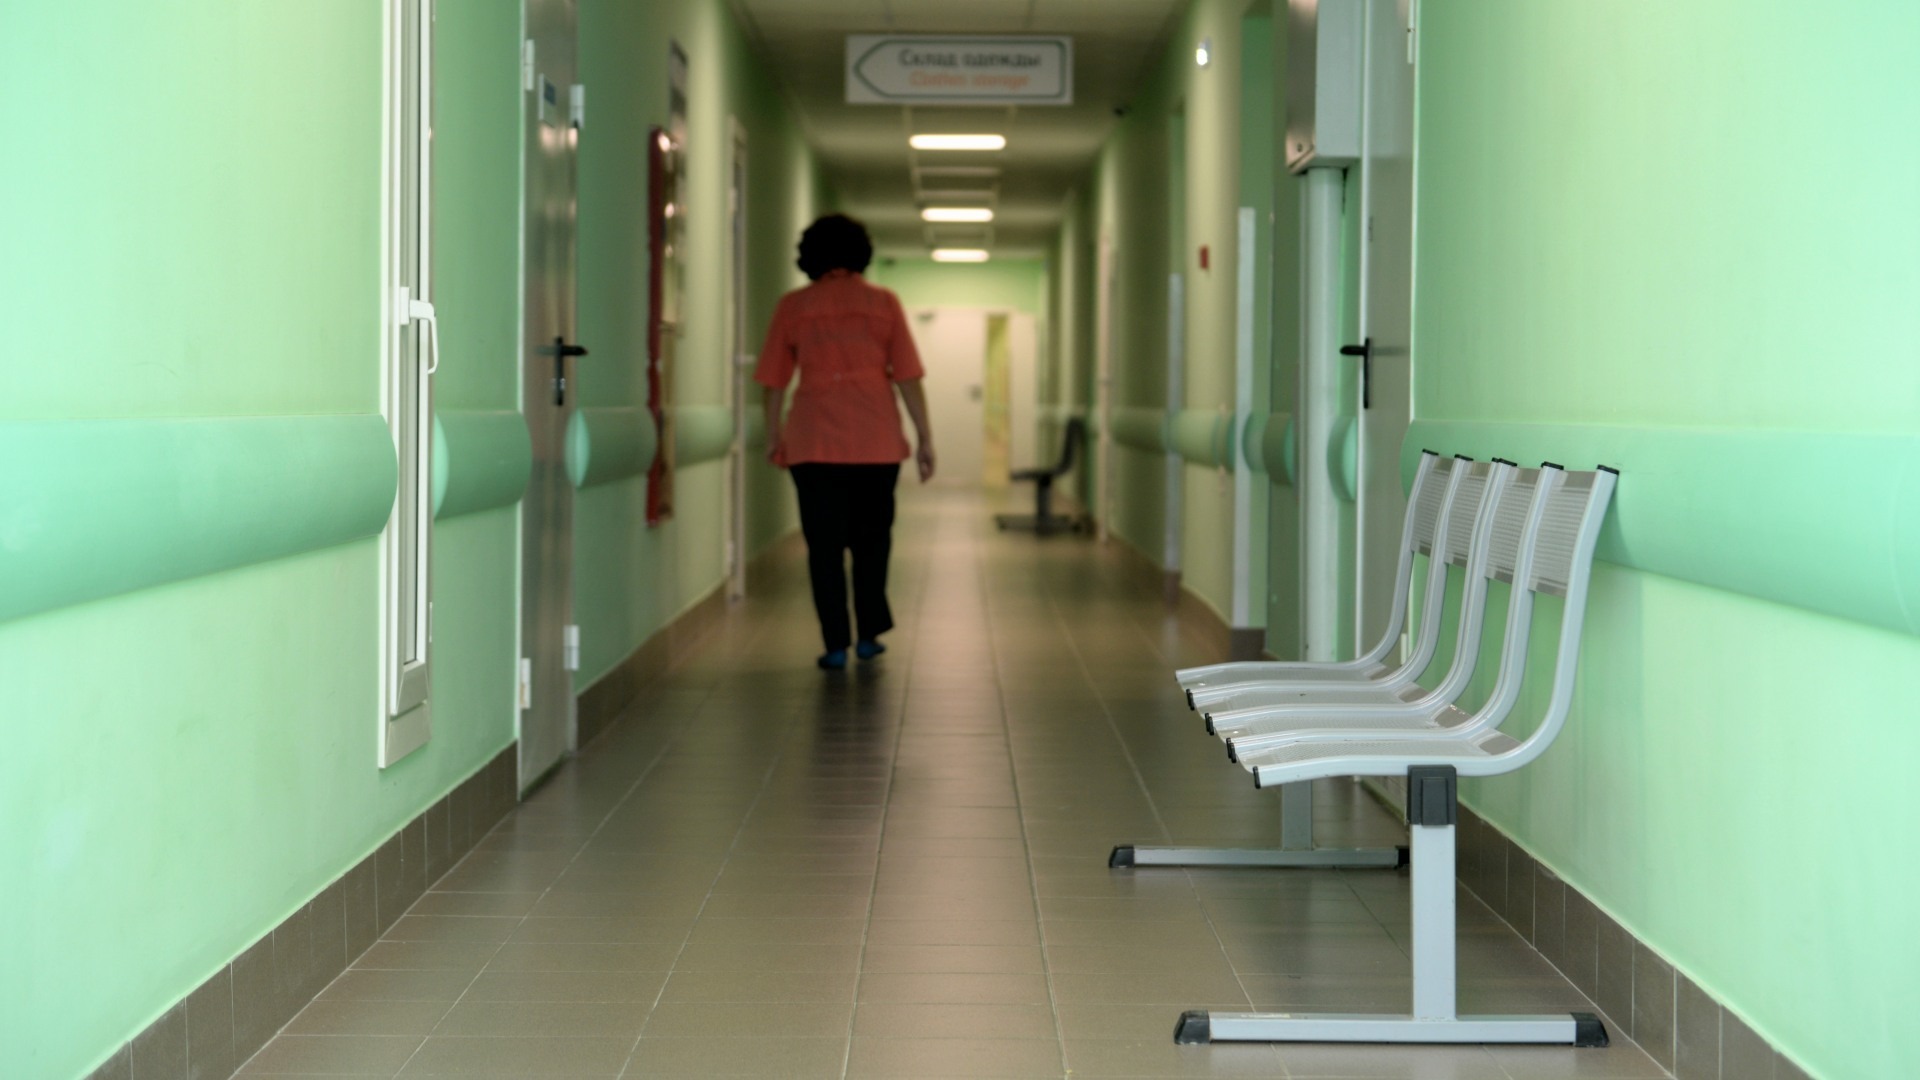 О нехватке препаратов для химиотерапии заявили онкобольные в Екатеринбурге